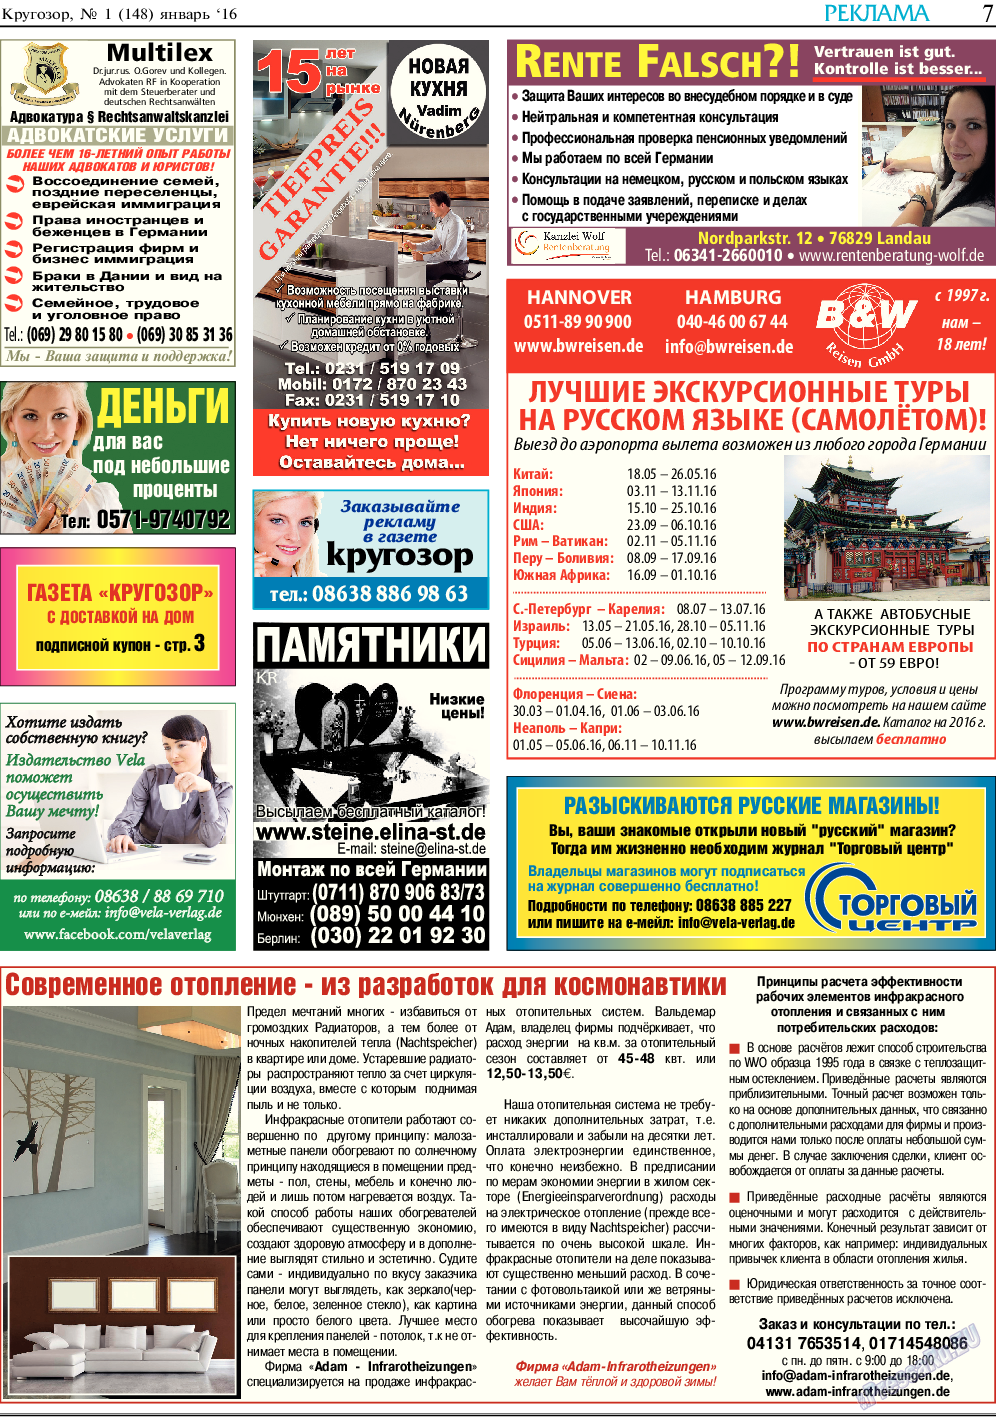 Кругозор, газета. 2016 №1 стр.7